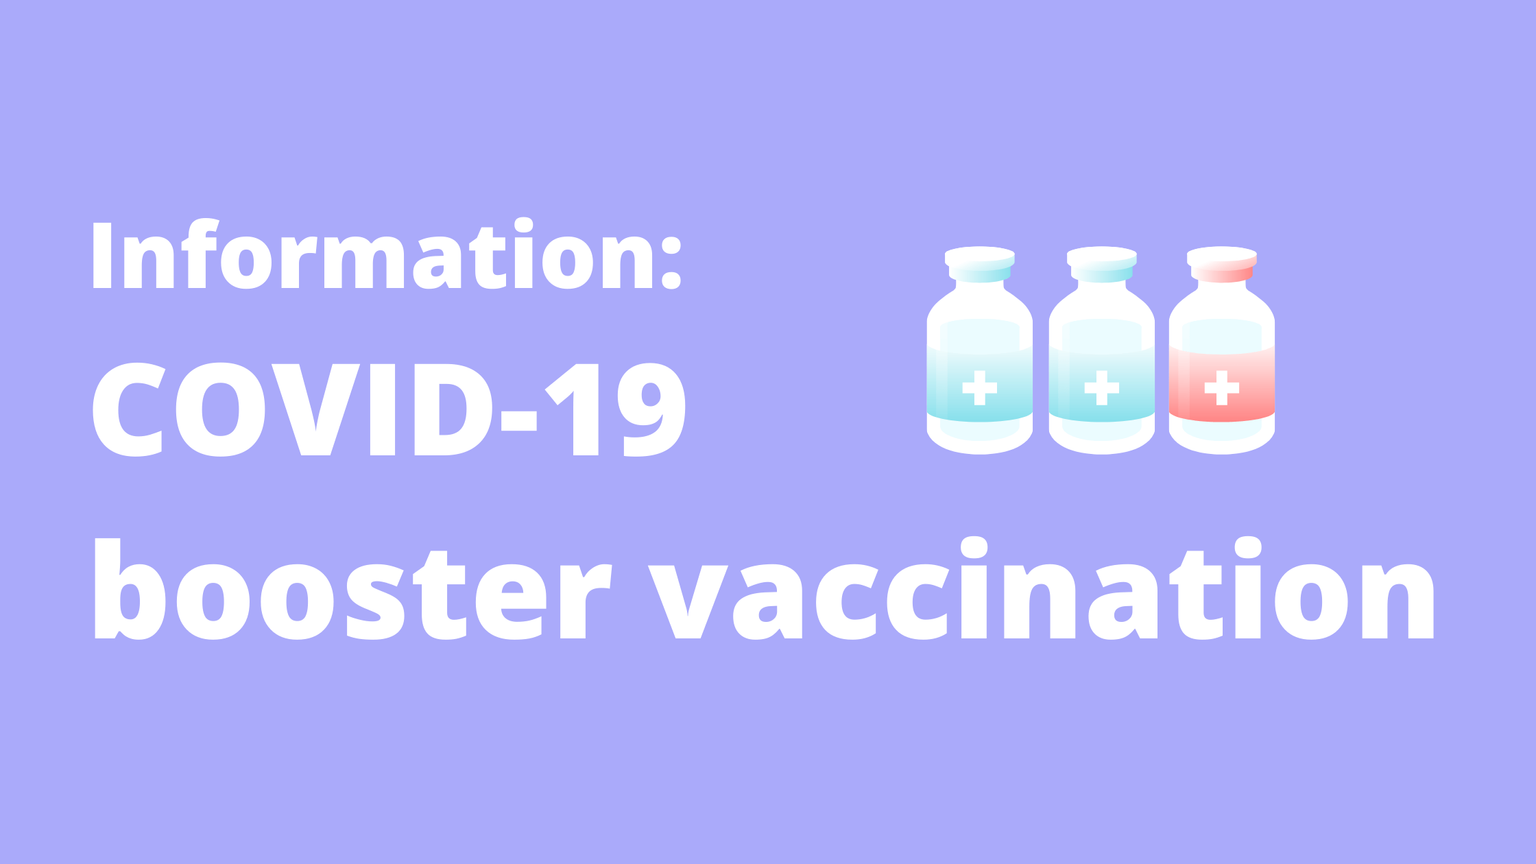 Lila Hintergrund mit drei medizinischen Dosis-Behältern und folgende Wörter in weißer Schrift: Information COVID-19 booster vaccination 